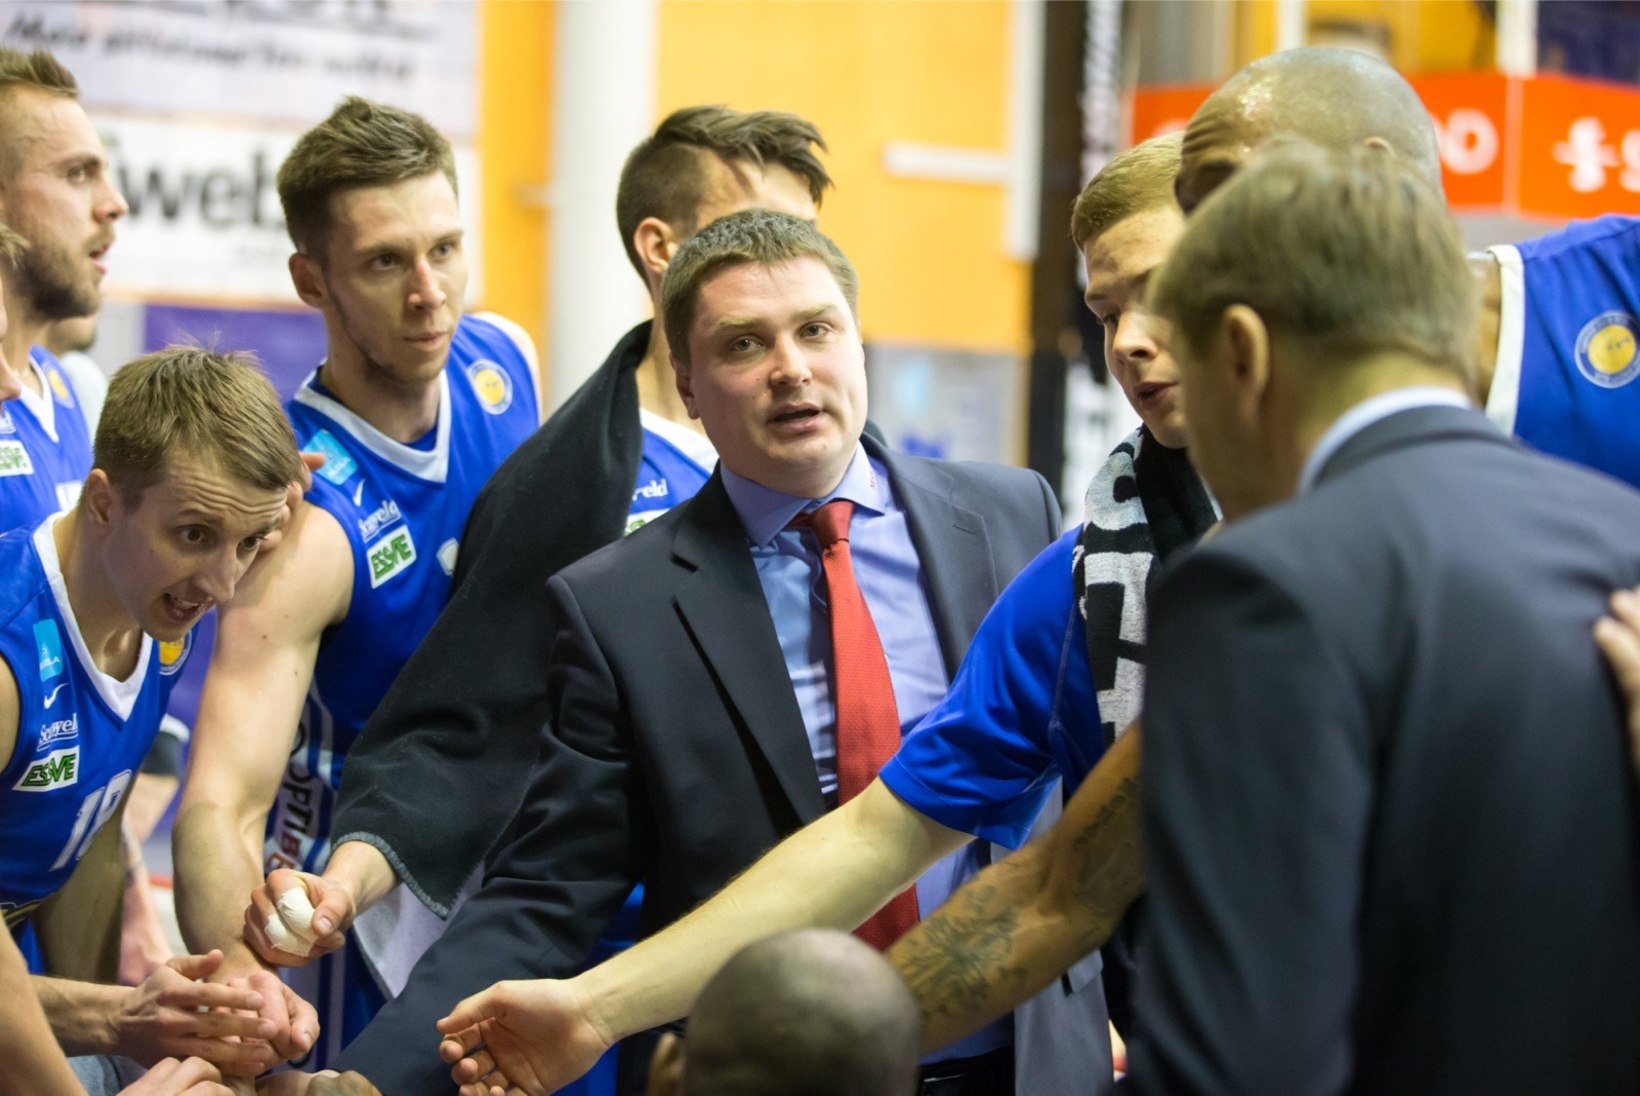 NII SEE JUHTUS | Sport 10.04: BC Kalev/Cramo alustas play-off'i kindla võiduga, Rakvere ja Tartu selgitavad finalisti otsustavas kohtumises